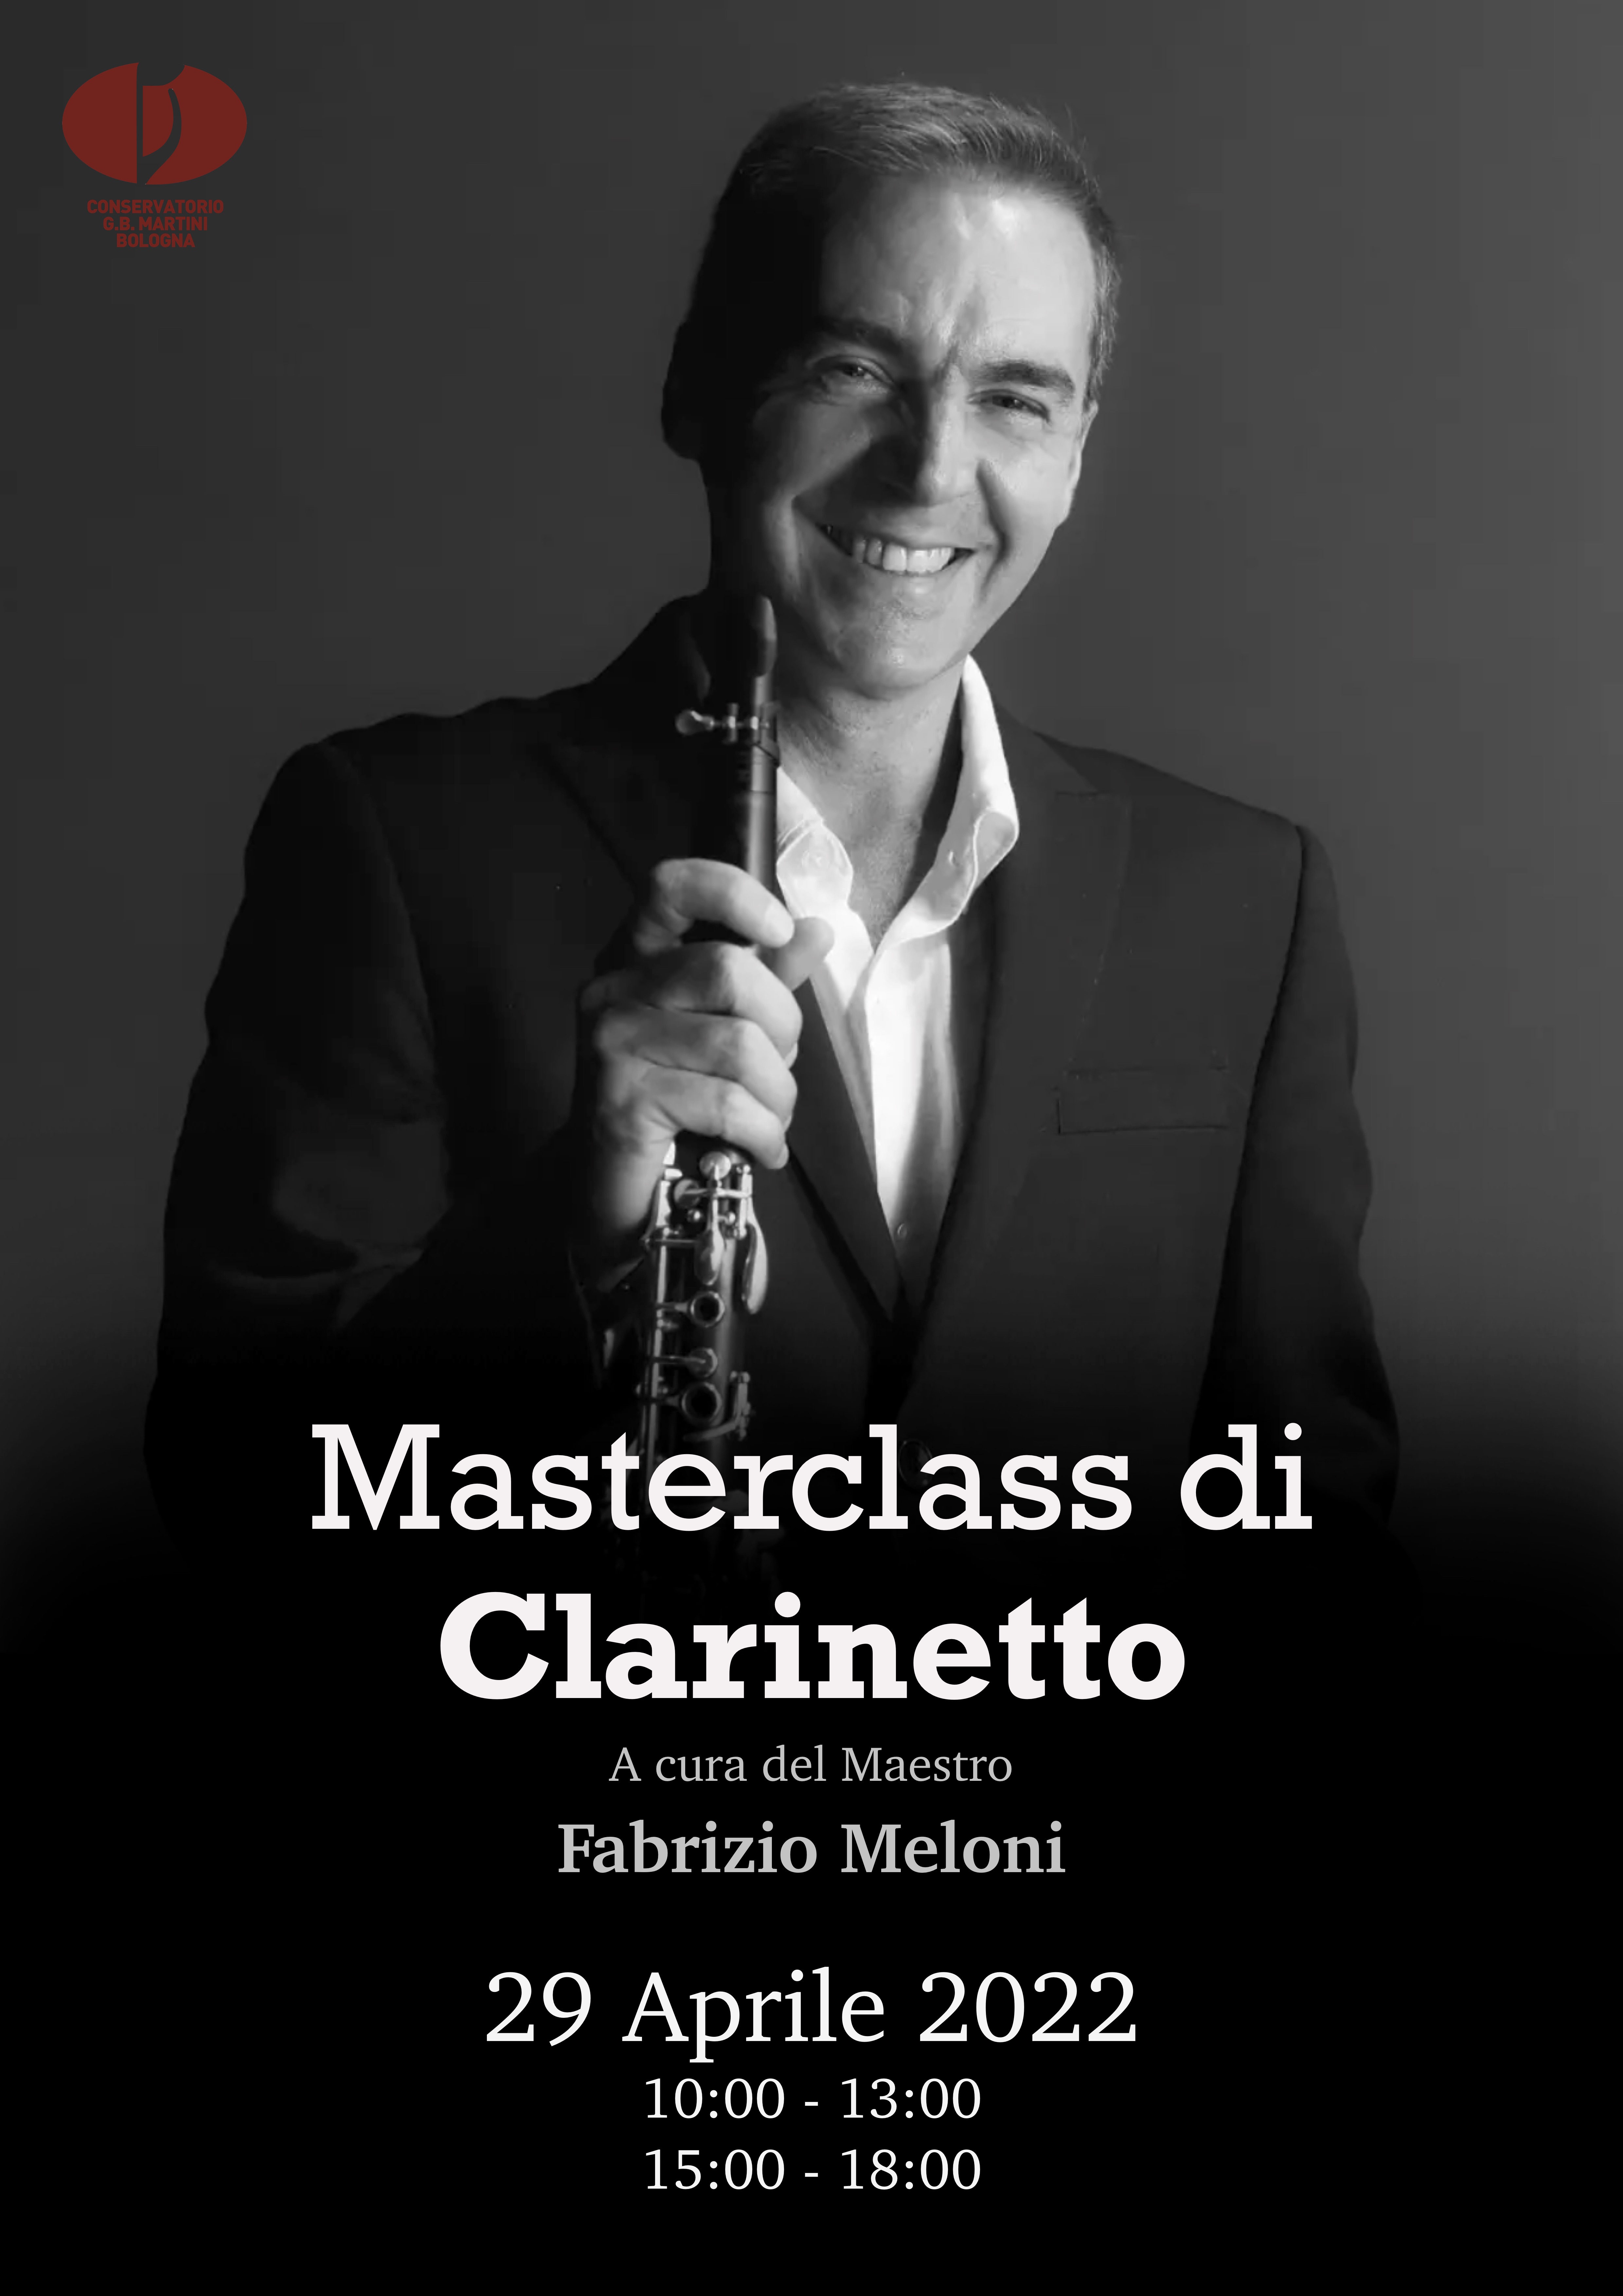 Masterclass di Clarinetto - M. Fabrizio Meloni